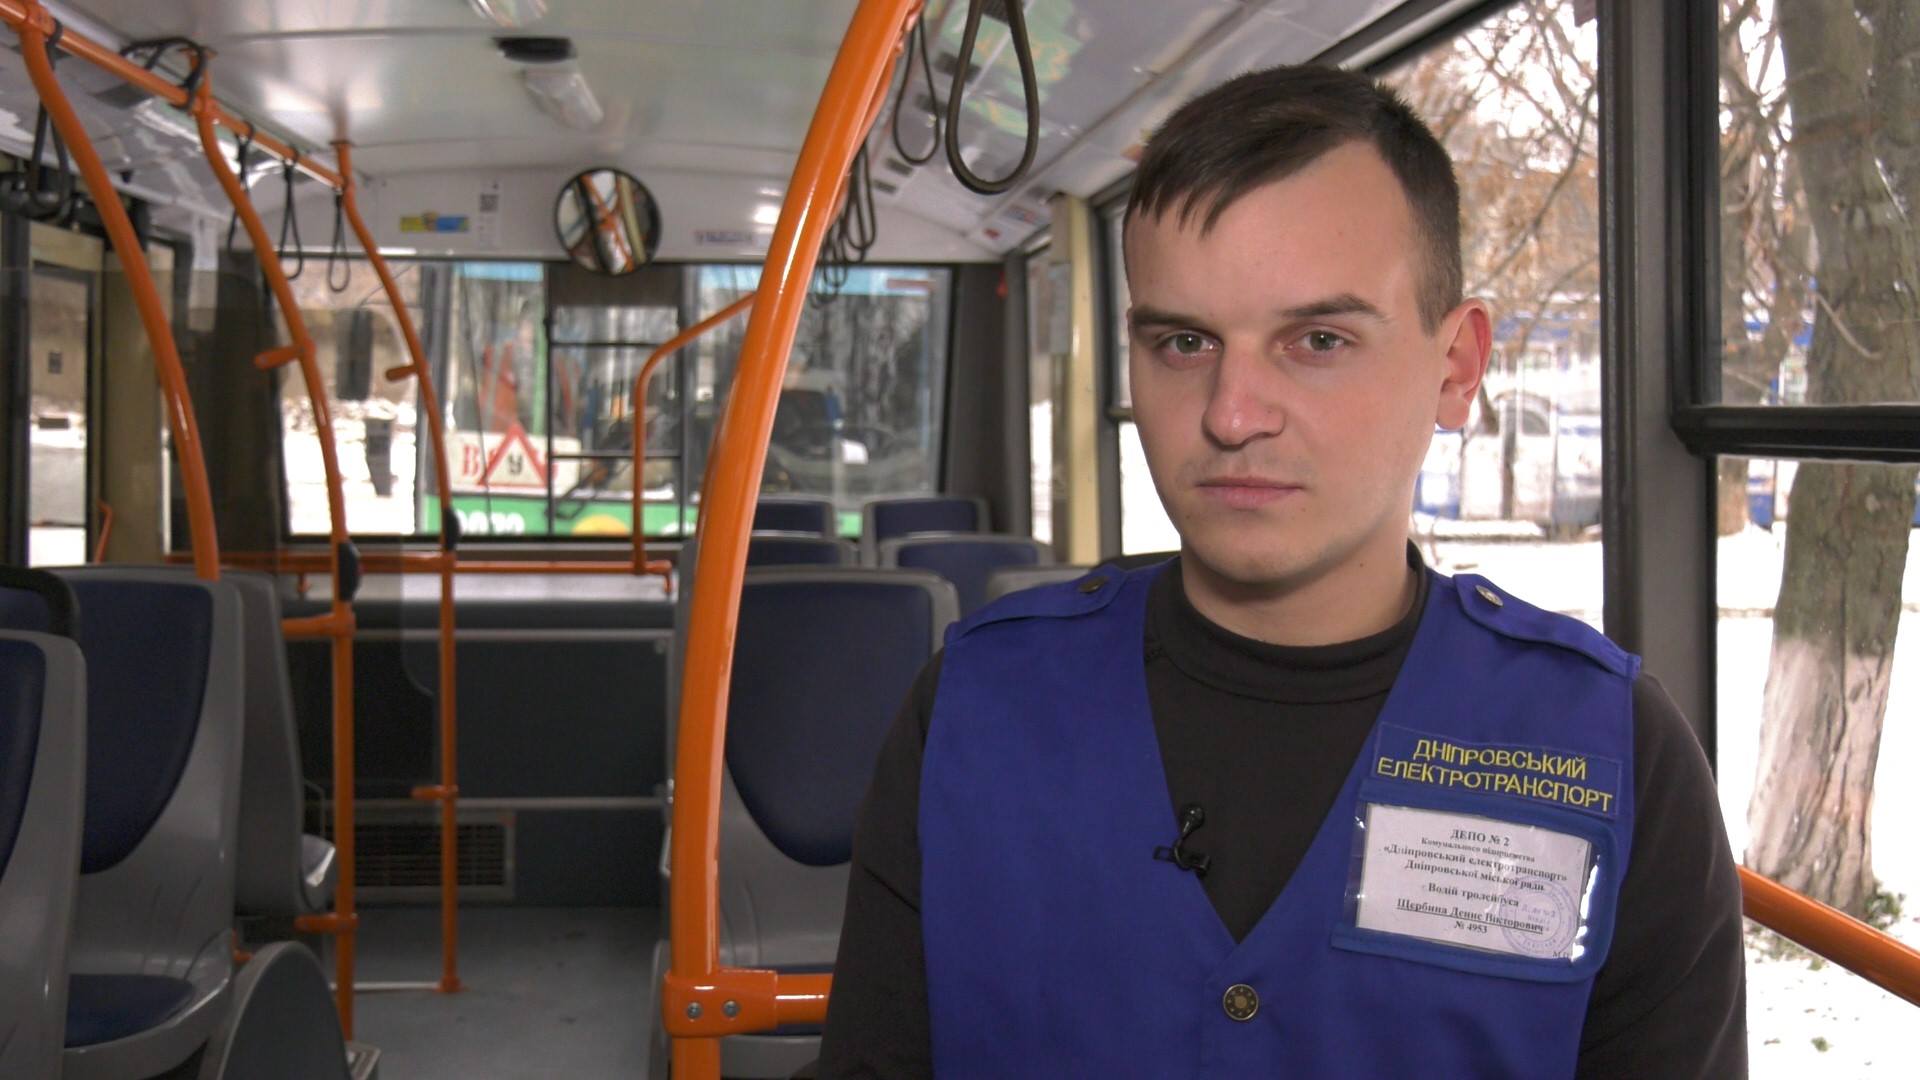 Фанат своего дела: история юного водителя троллейбуса из Днепра. Новости Днепра